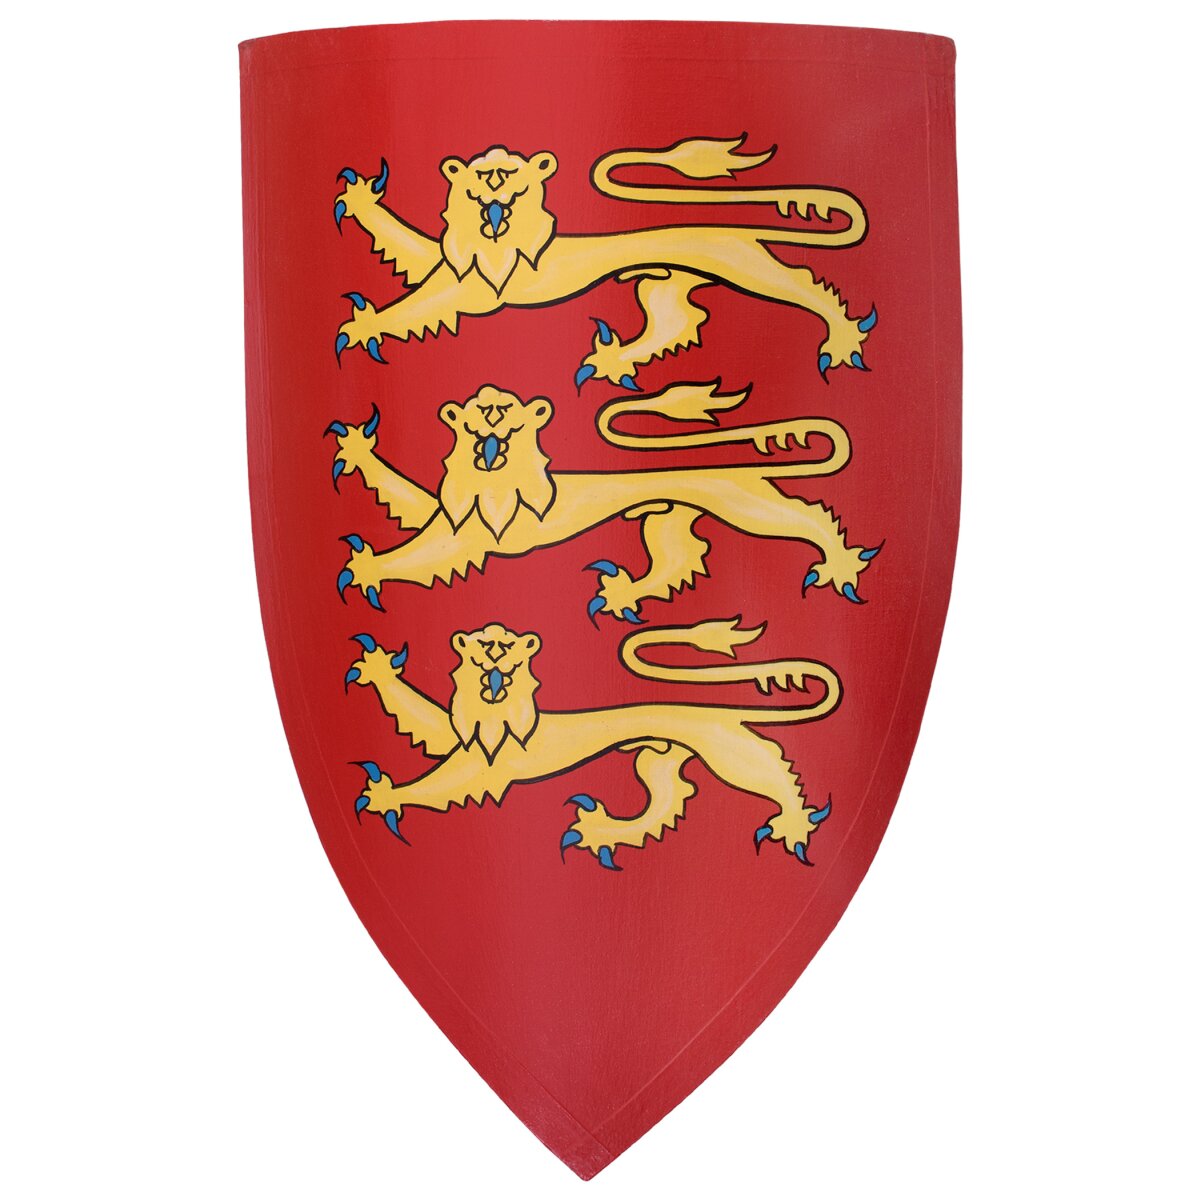 Schild von König Eduard I.